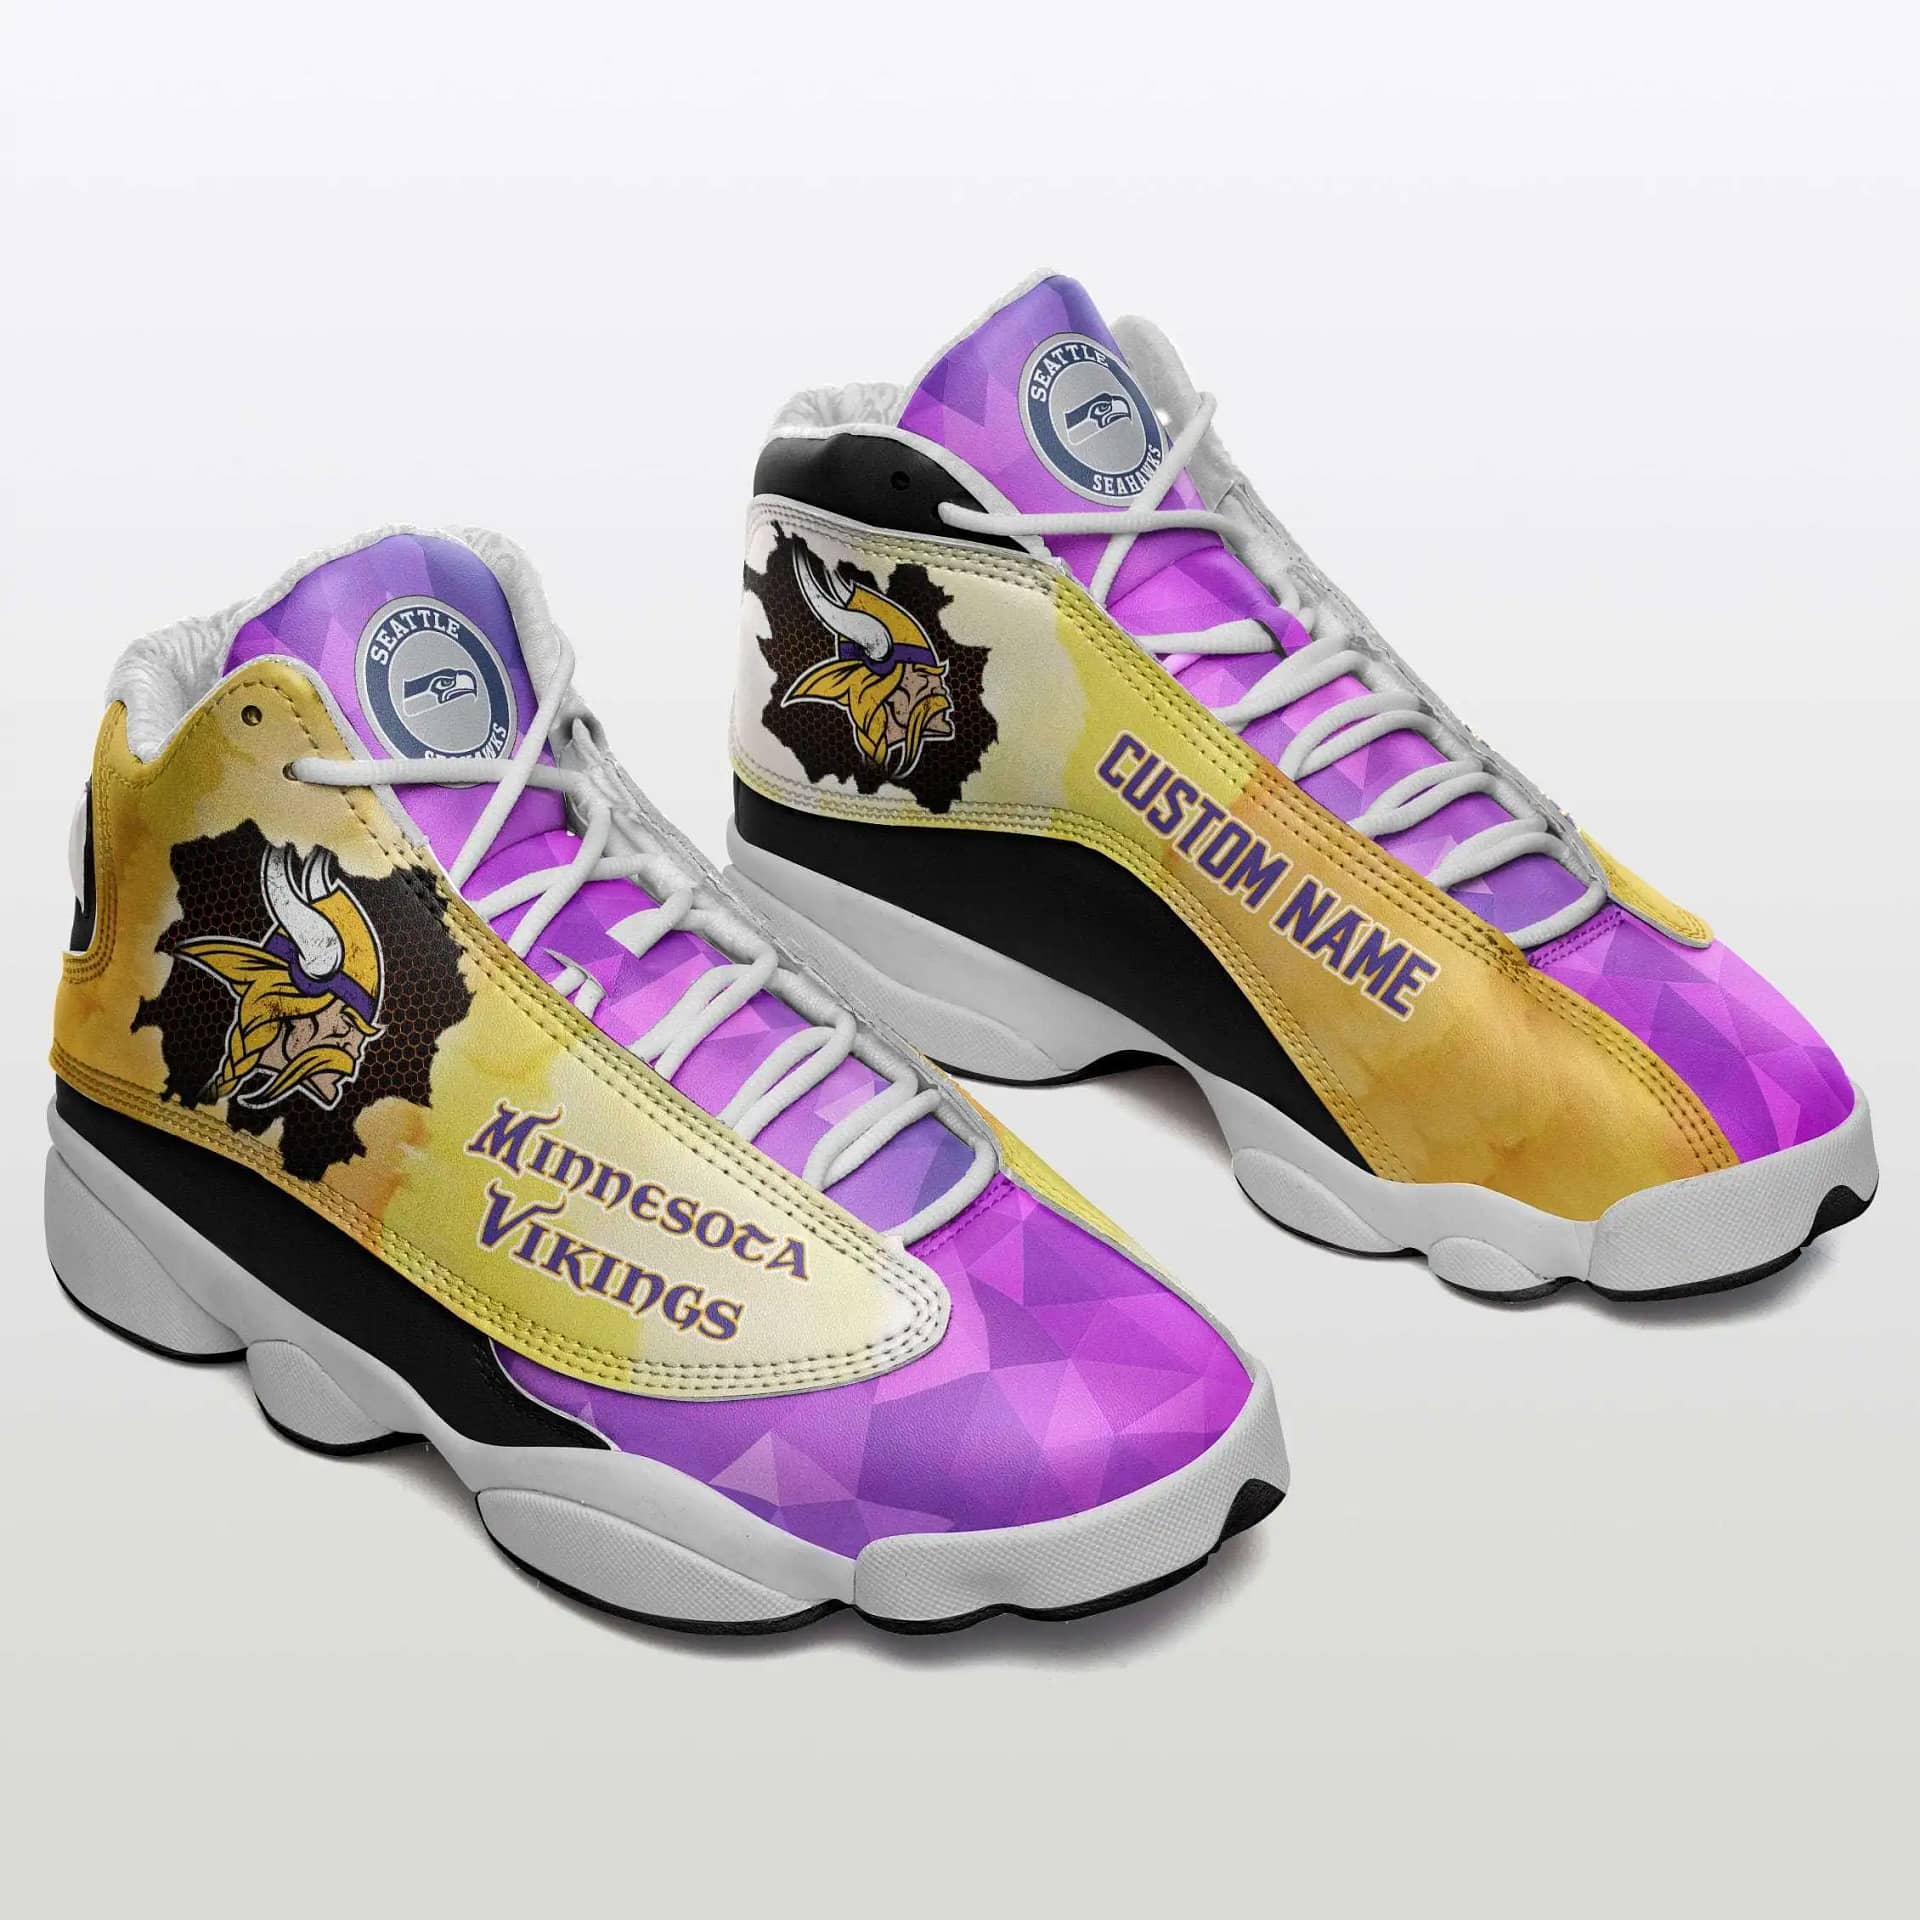 Minnesota Vikings Air Jordan Shoes